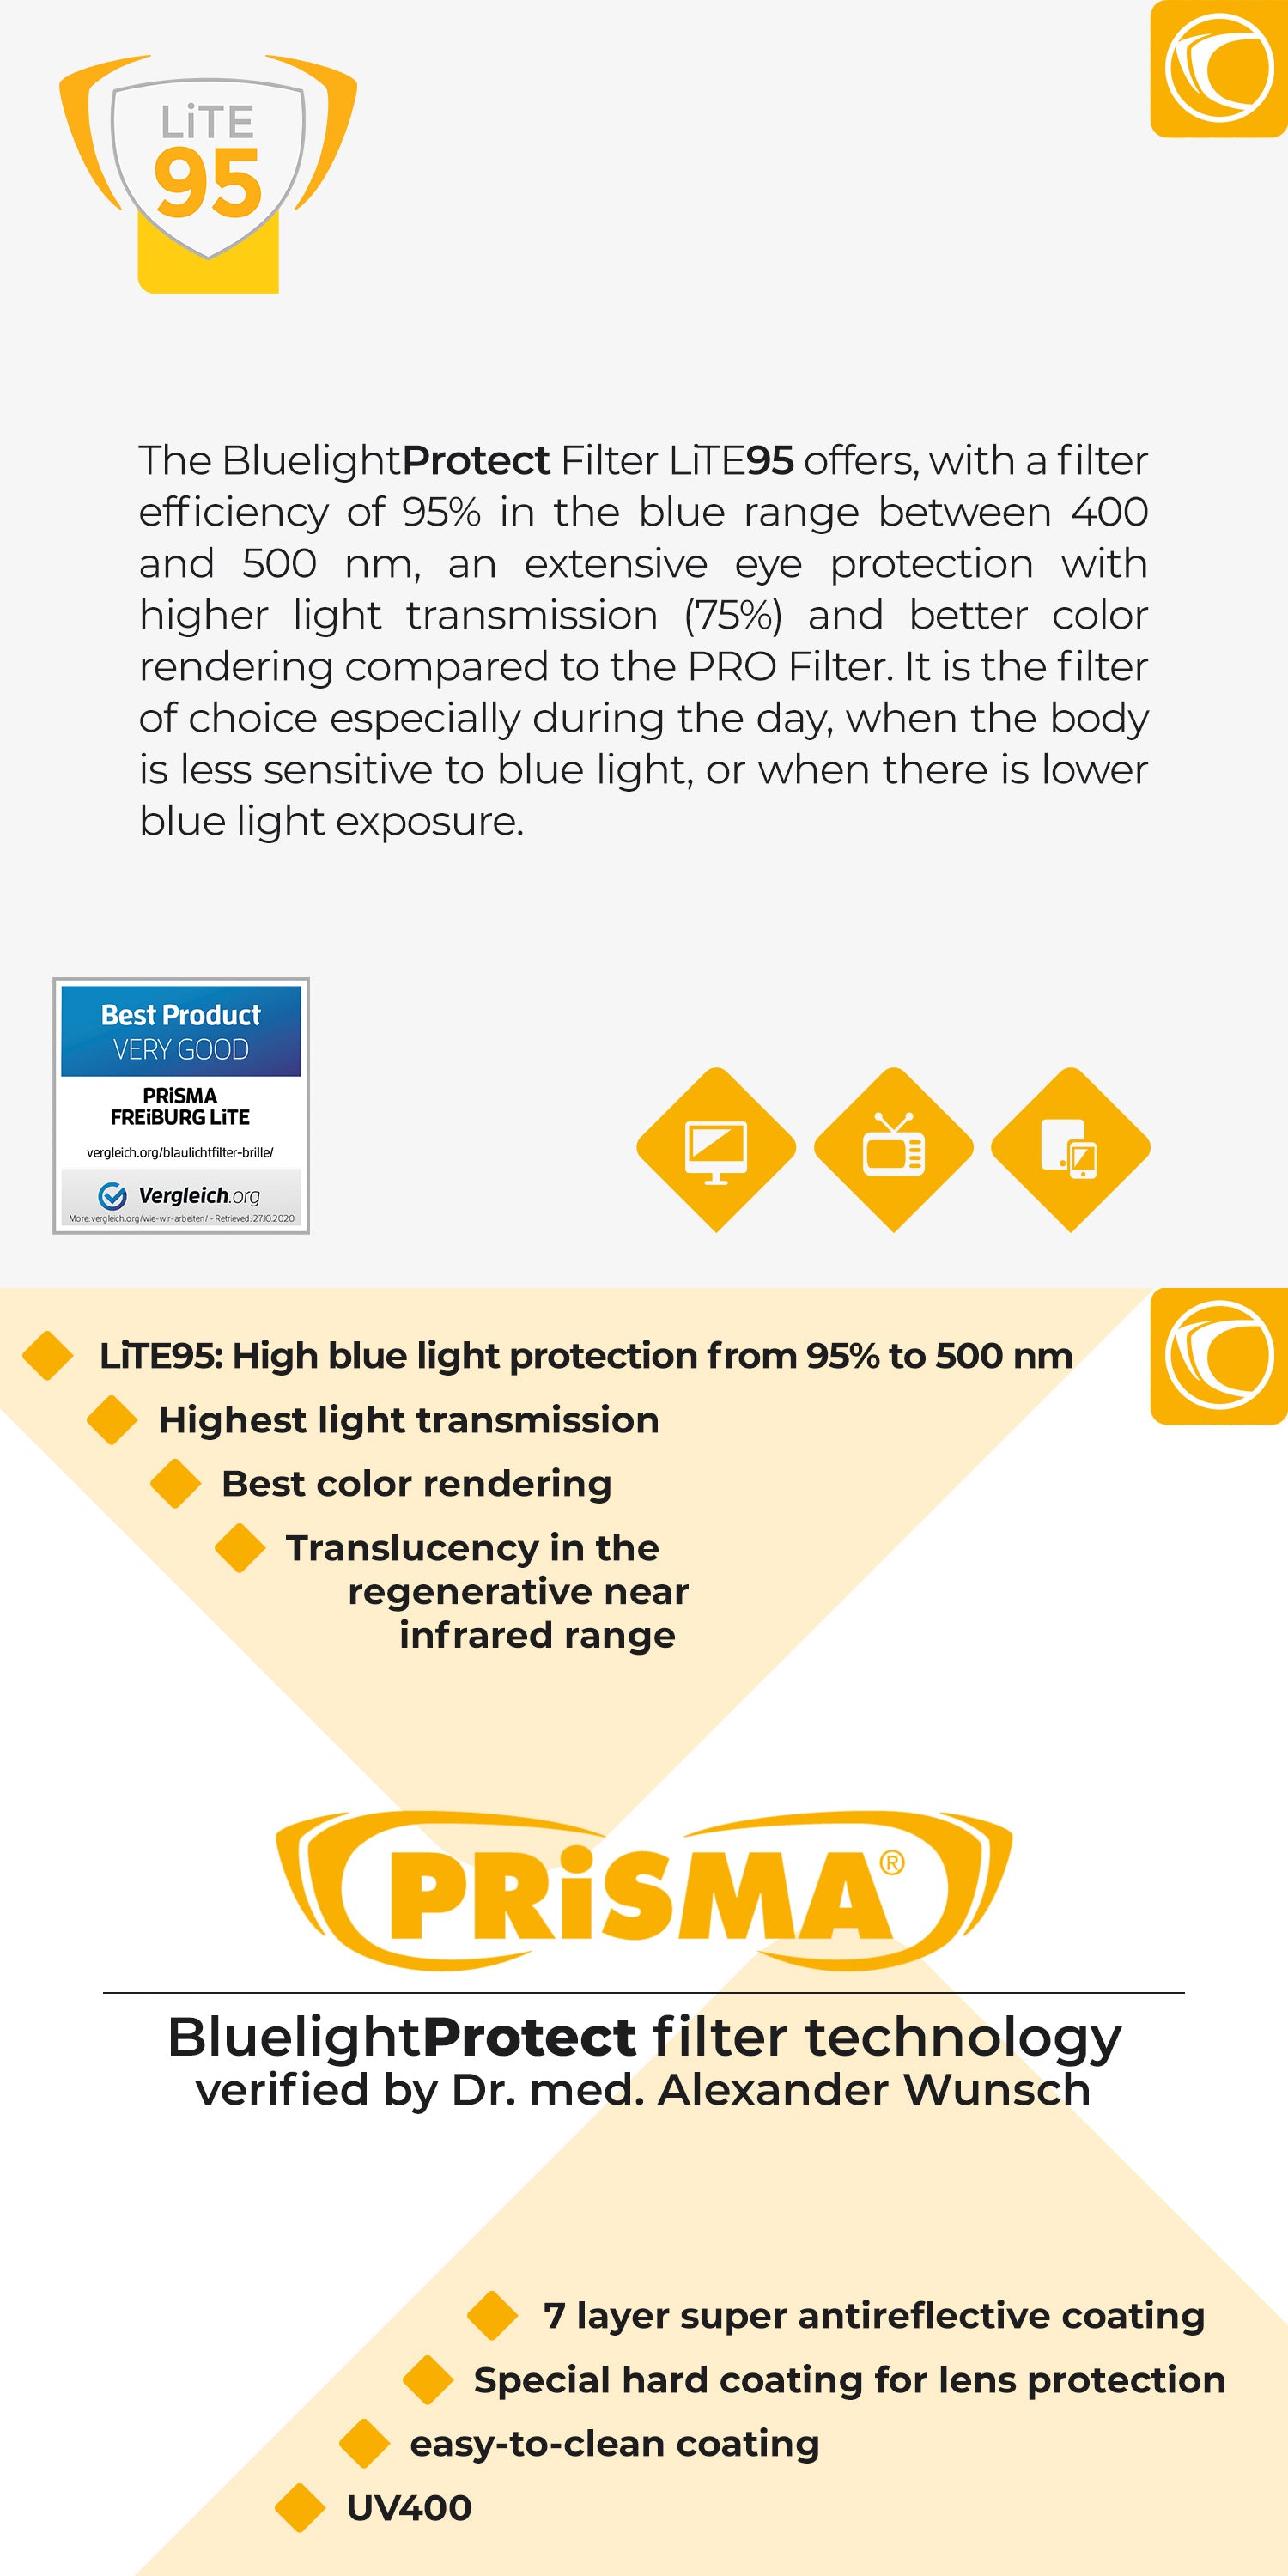 PRiSMA Blue Blocking Glasses - FREiBURG LiTE F704N